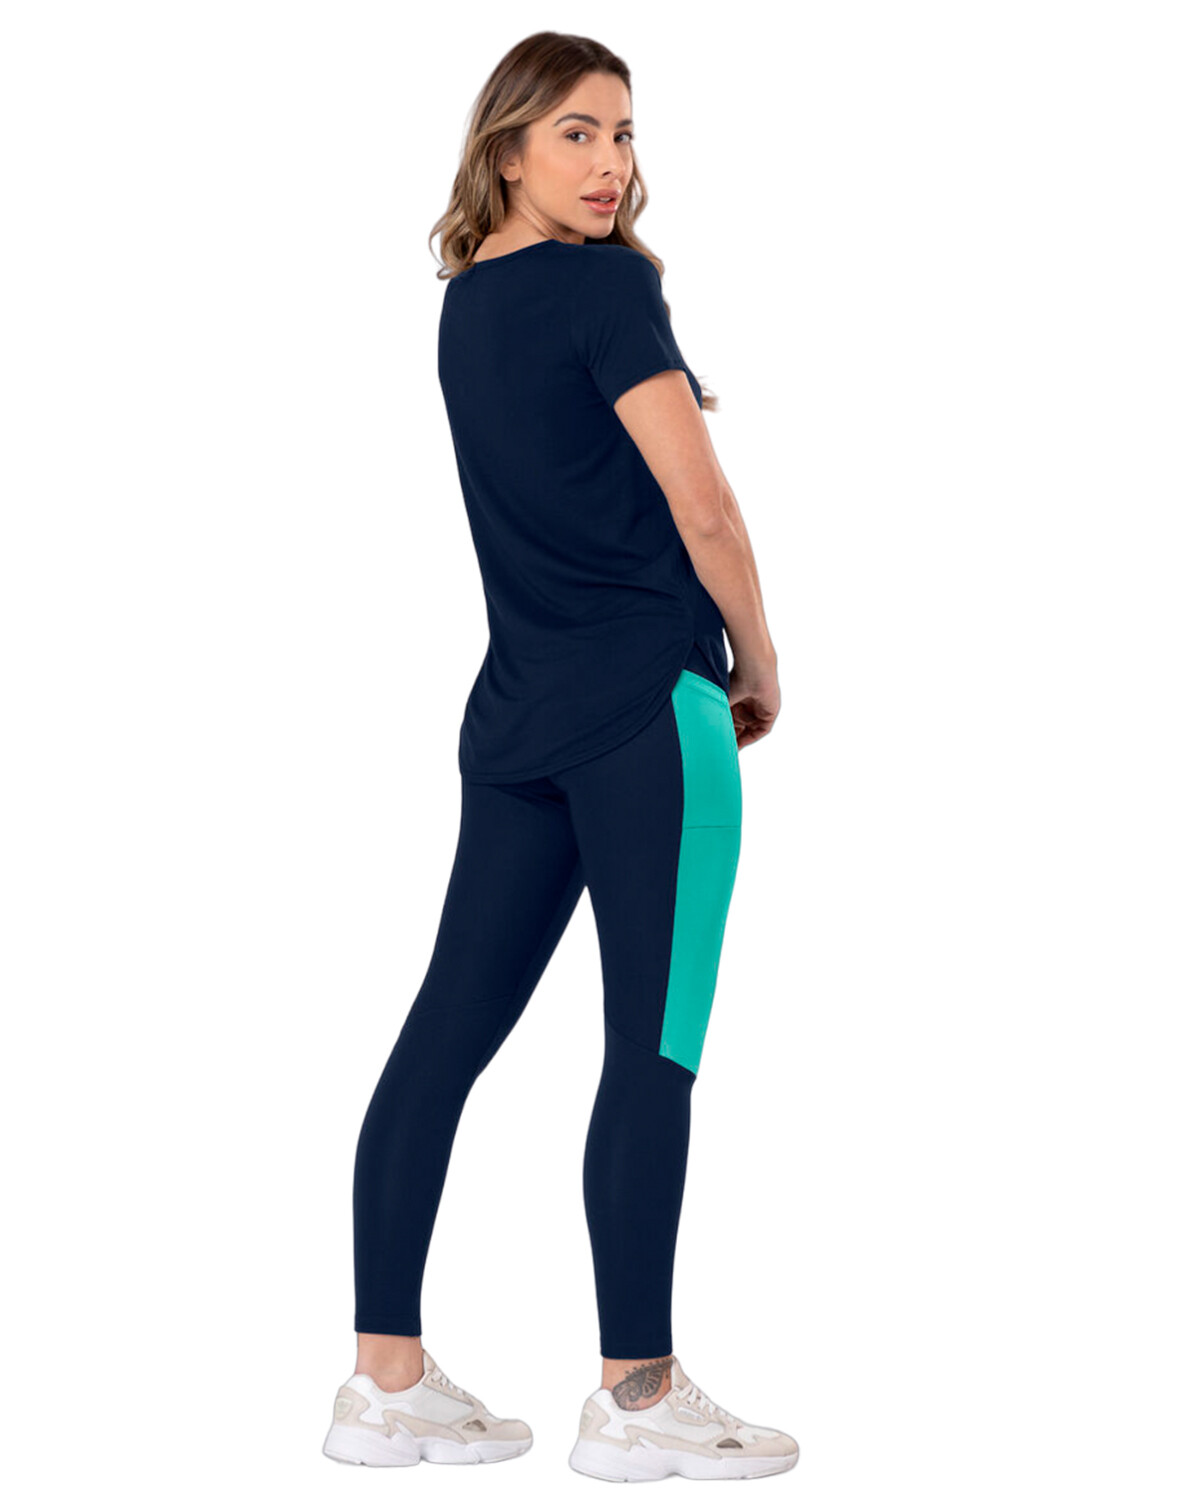 Tendencias Y Diseños Maria C- Granada Meta - Encuentra leggins metalizados  con cierre marca Ankara Color azul oscuro, negro y plateado 💁🏻‍♀️